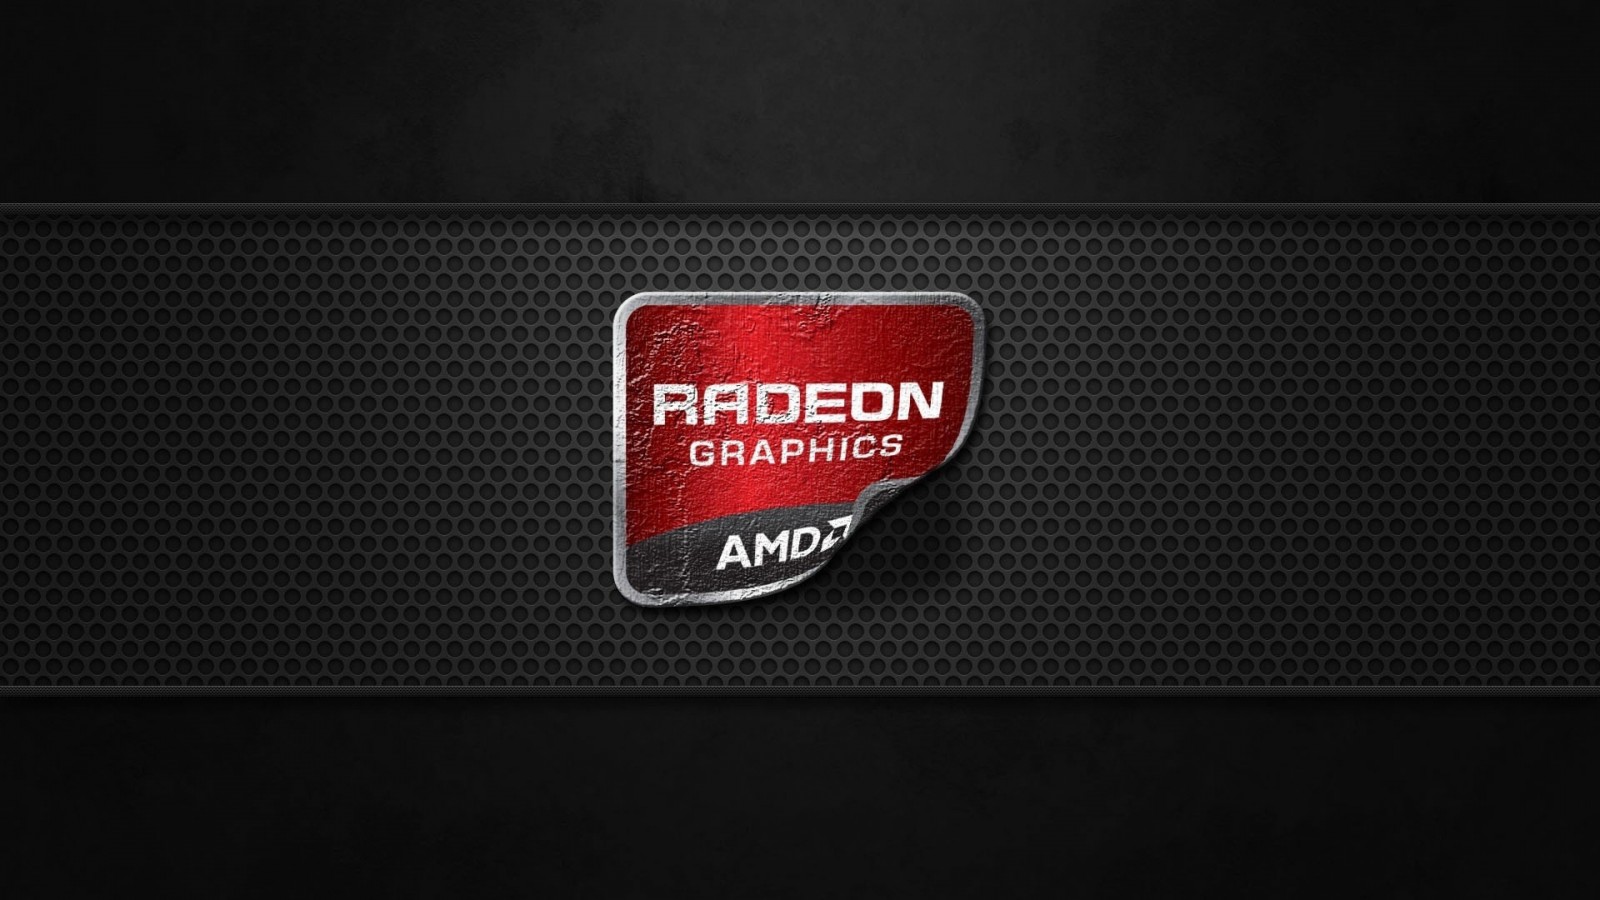 AMD Radeon Graphics Wallpaper for Desktop 1600x900